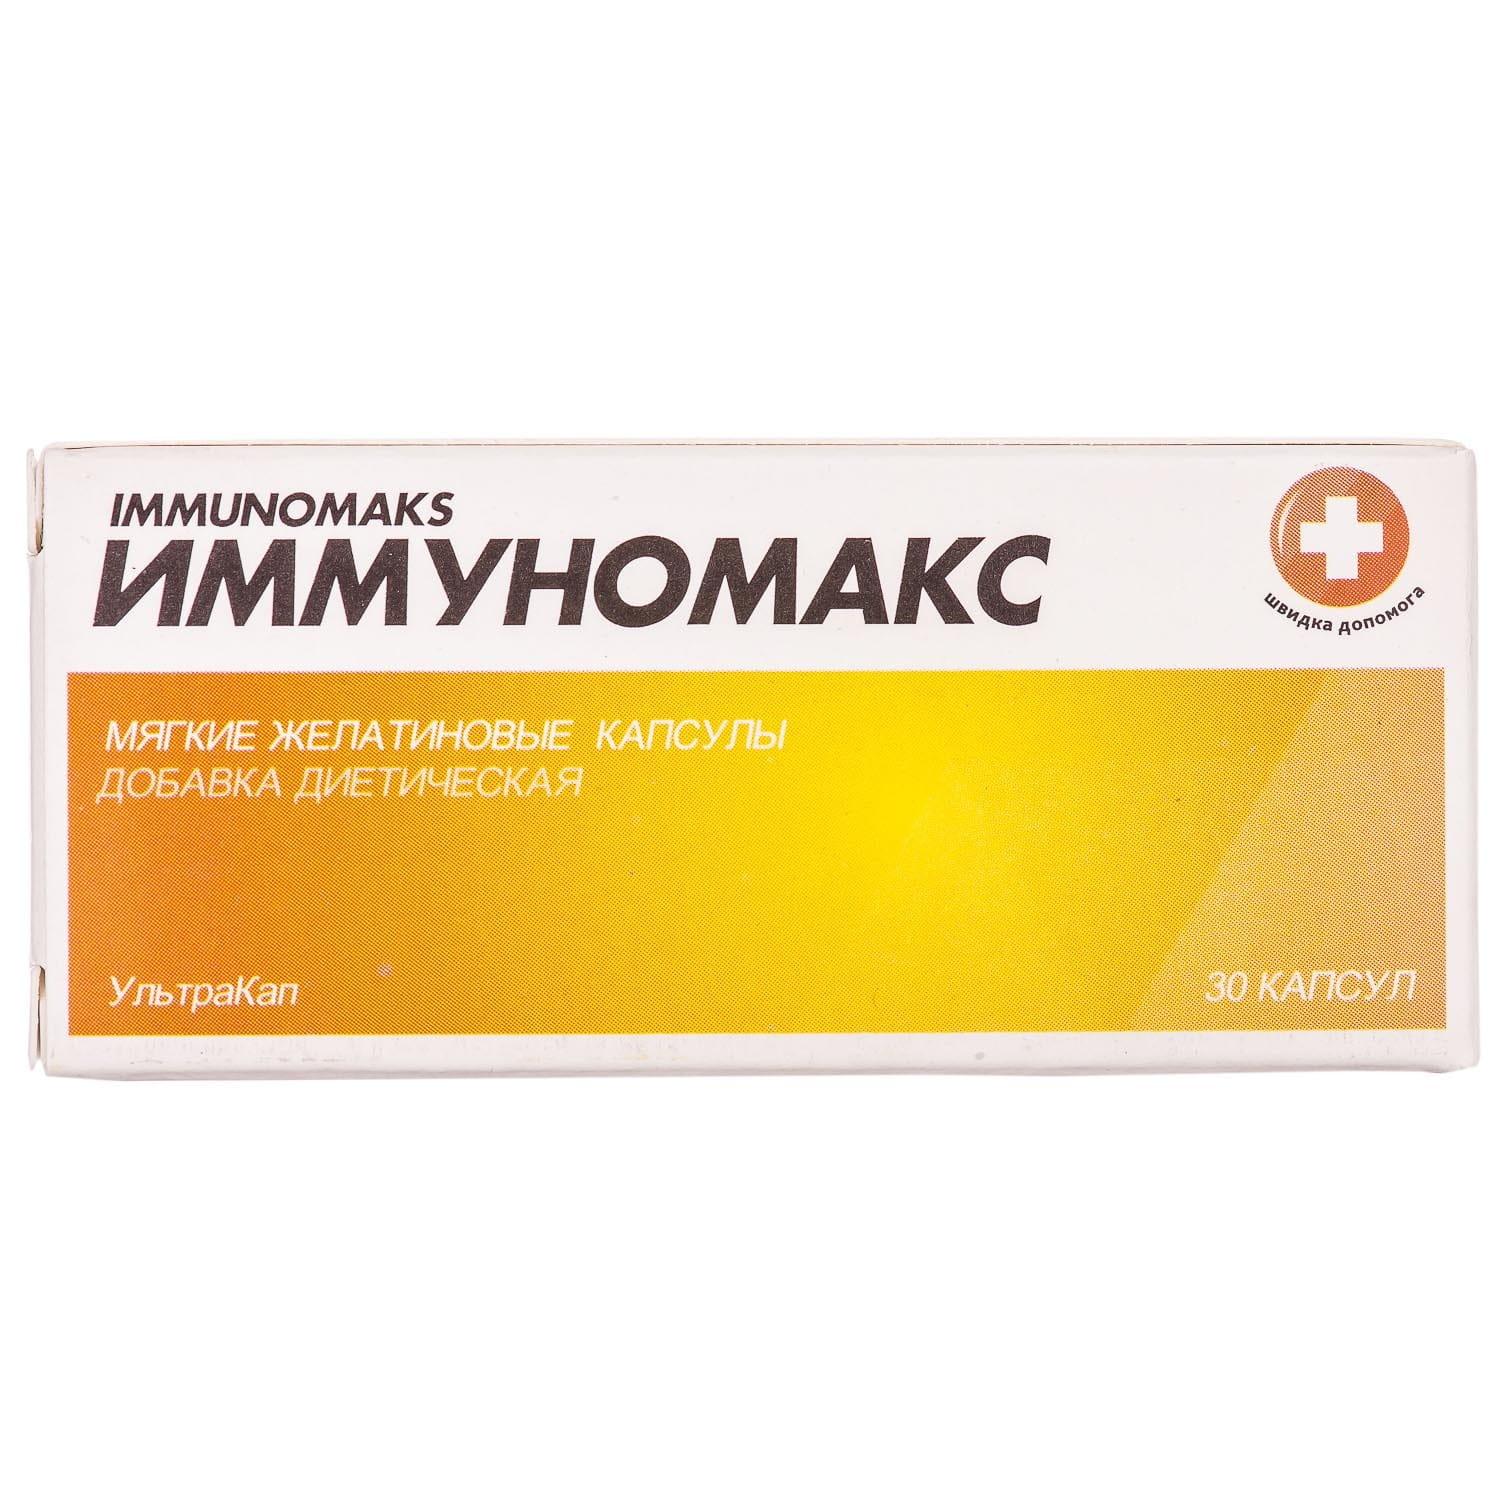 Иммуномакс инструкция, цена в аптеках  - МИС Аптека 9-1-1